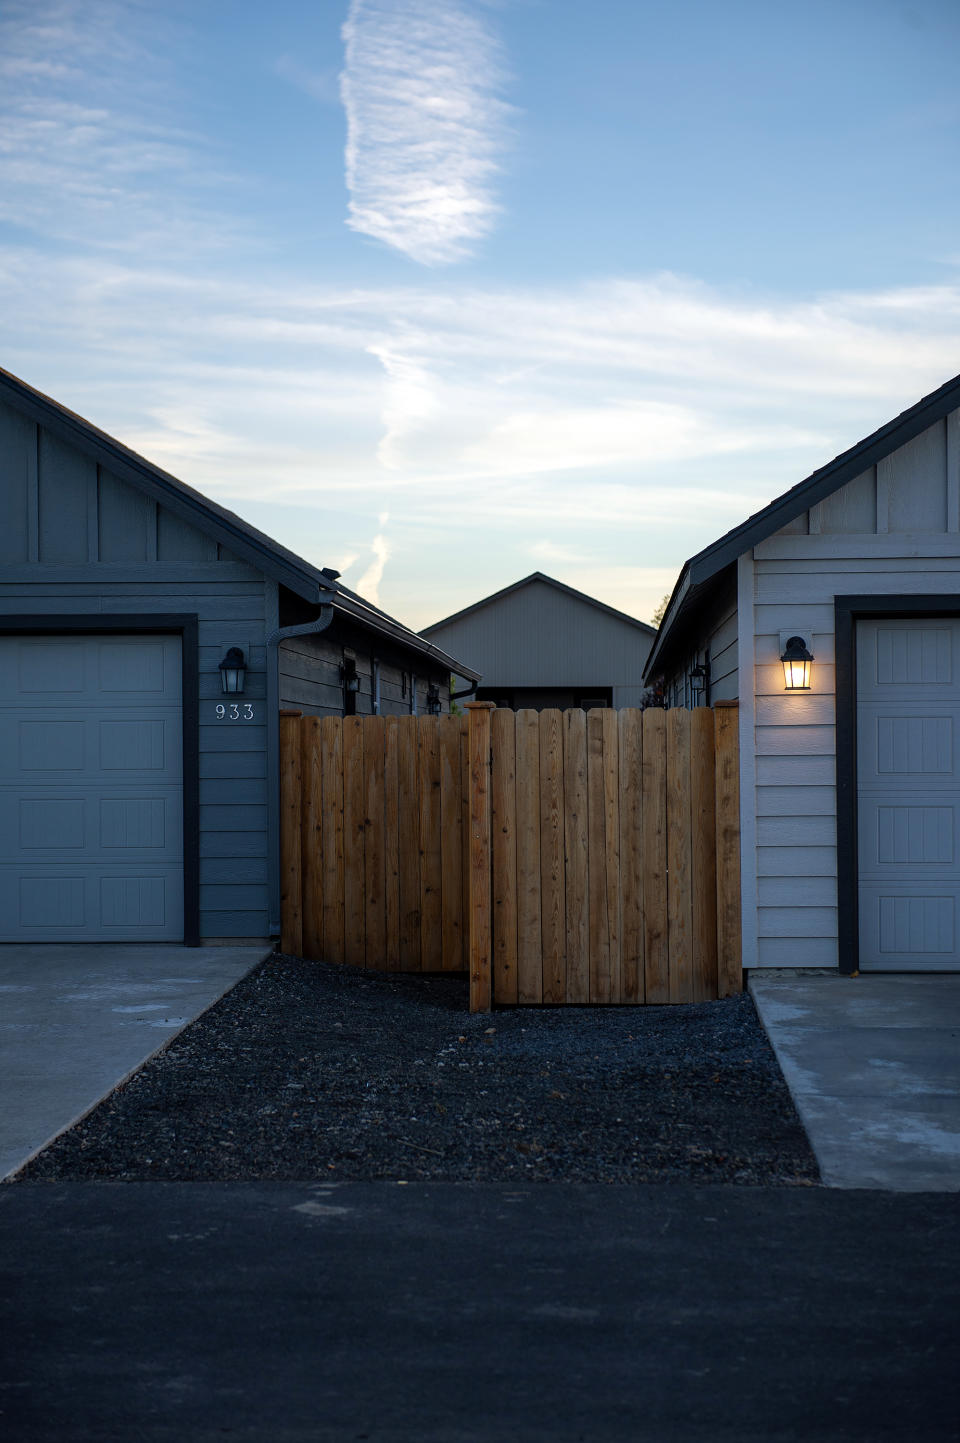 En Cinder Butte Village, las casas nuevas estarán mucho más juntas que las construidas hace unos años. (Amanda Lucier/The New York Times)